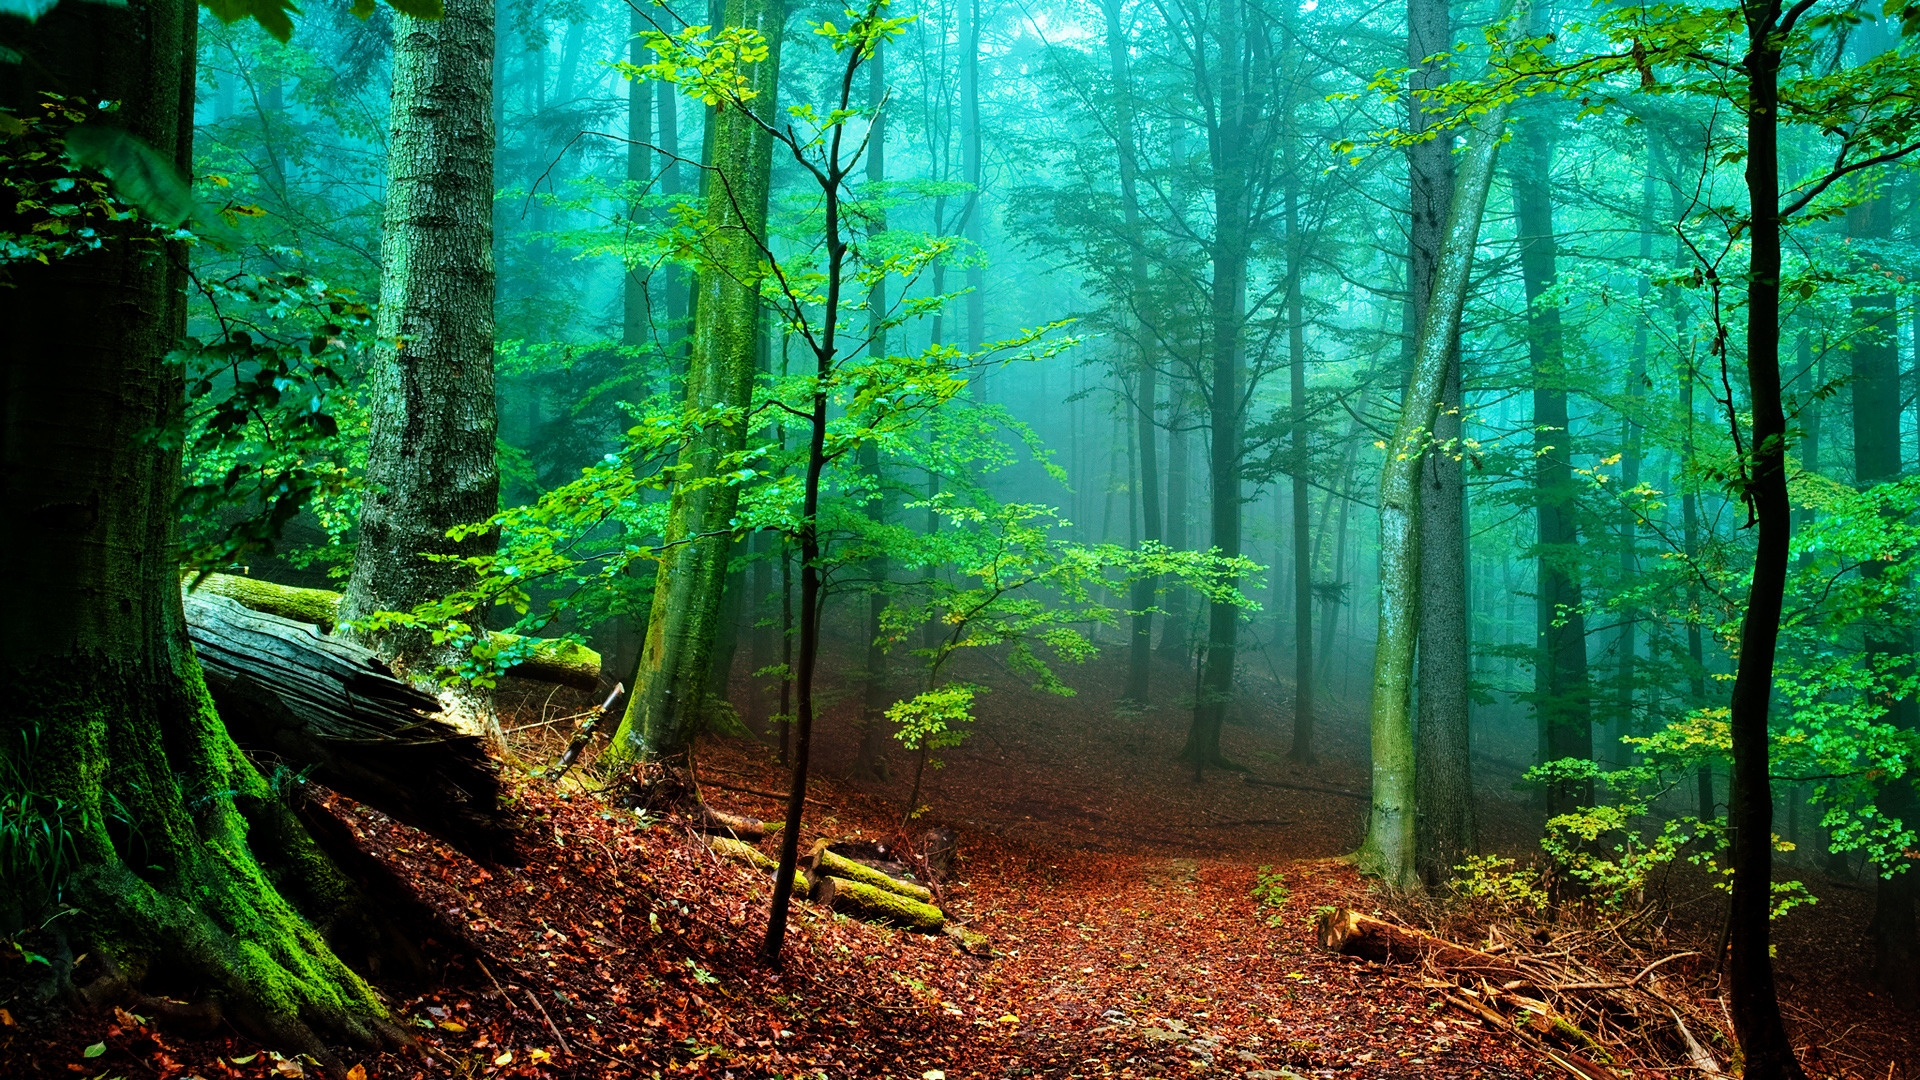 Forest Fog for 1920 x 1080 HDTV 1080p resolution